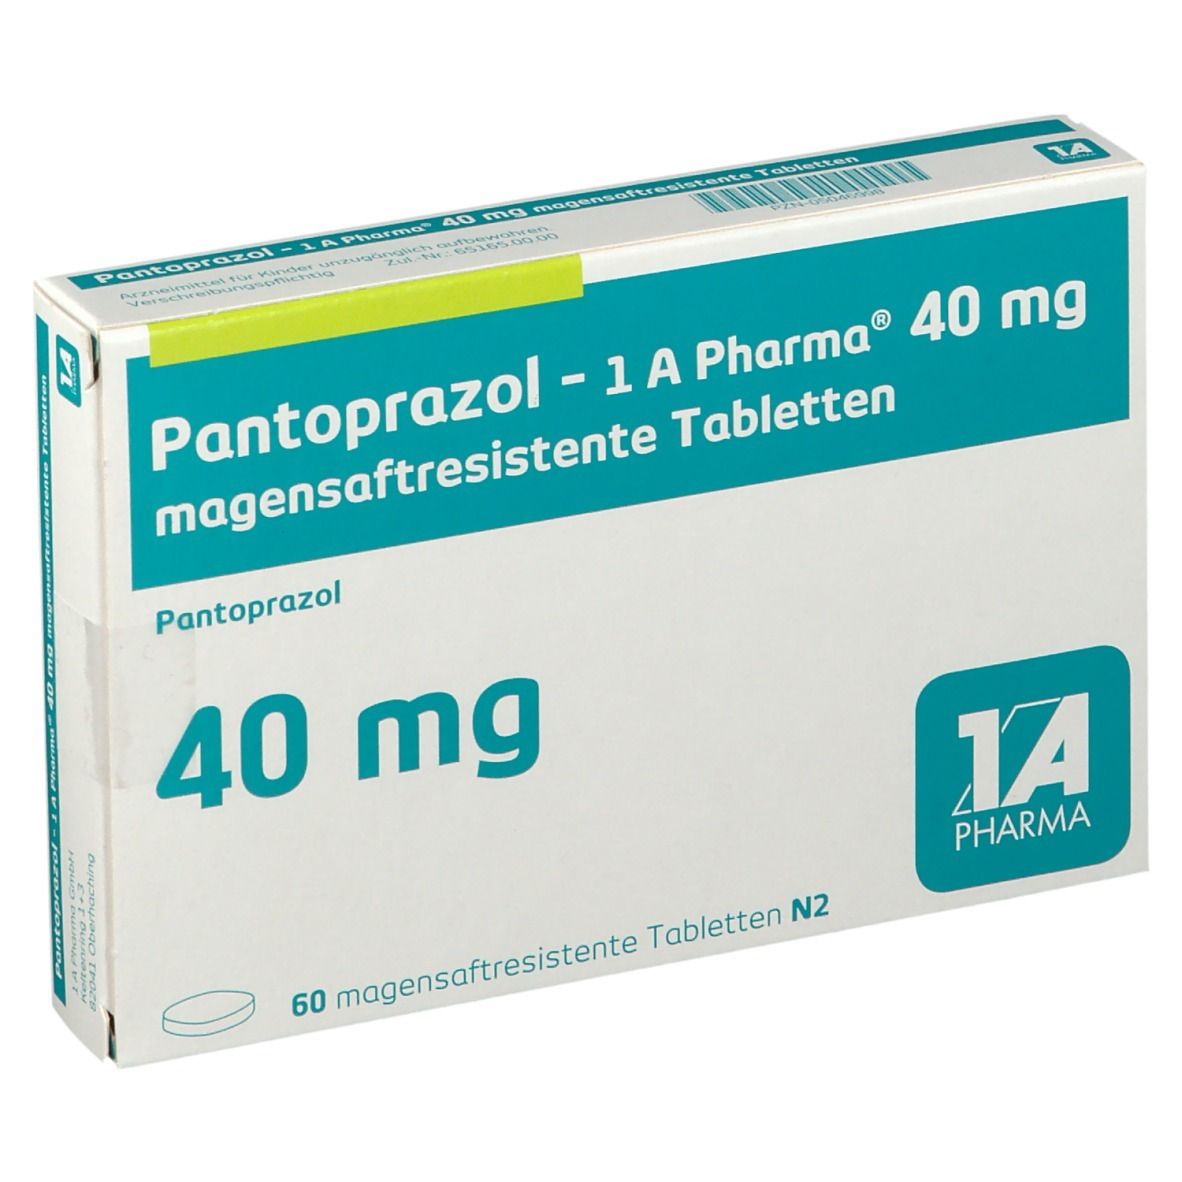 Pantoprazol 1A Pharma® 40Mg